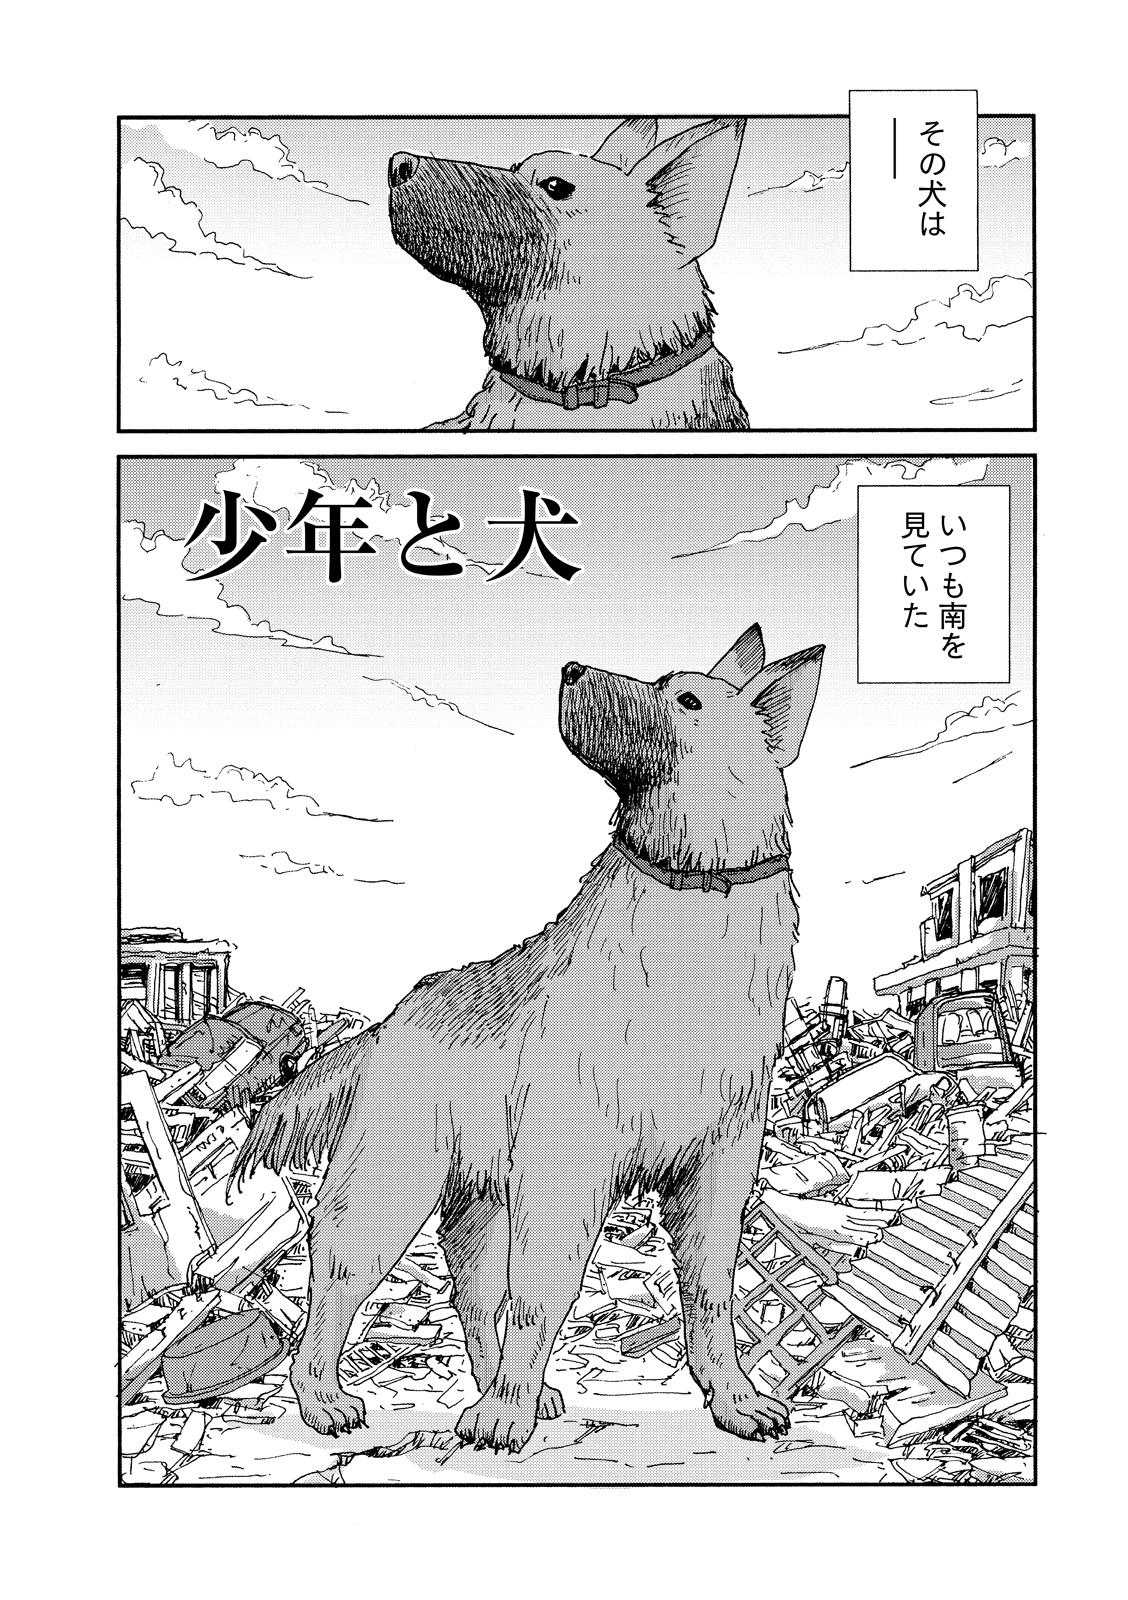 『少年と犬』(原作・馳星周、漫画・村上たかし)２